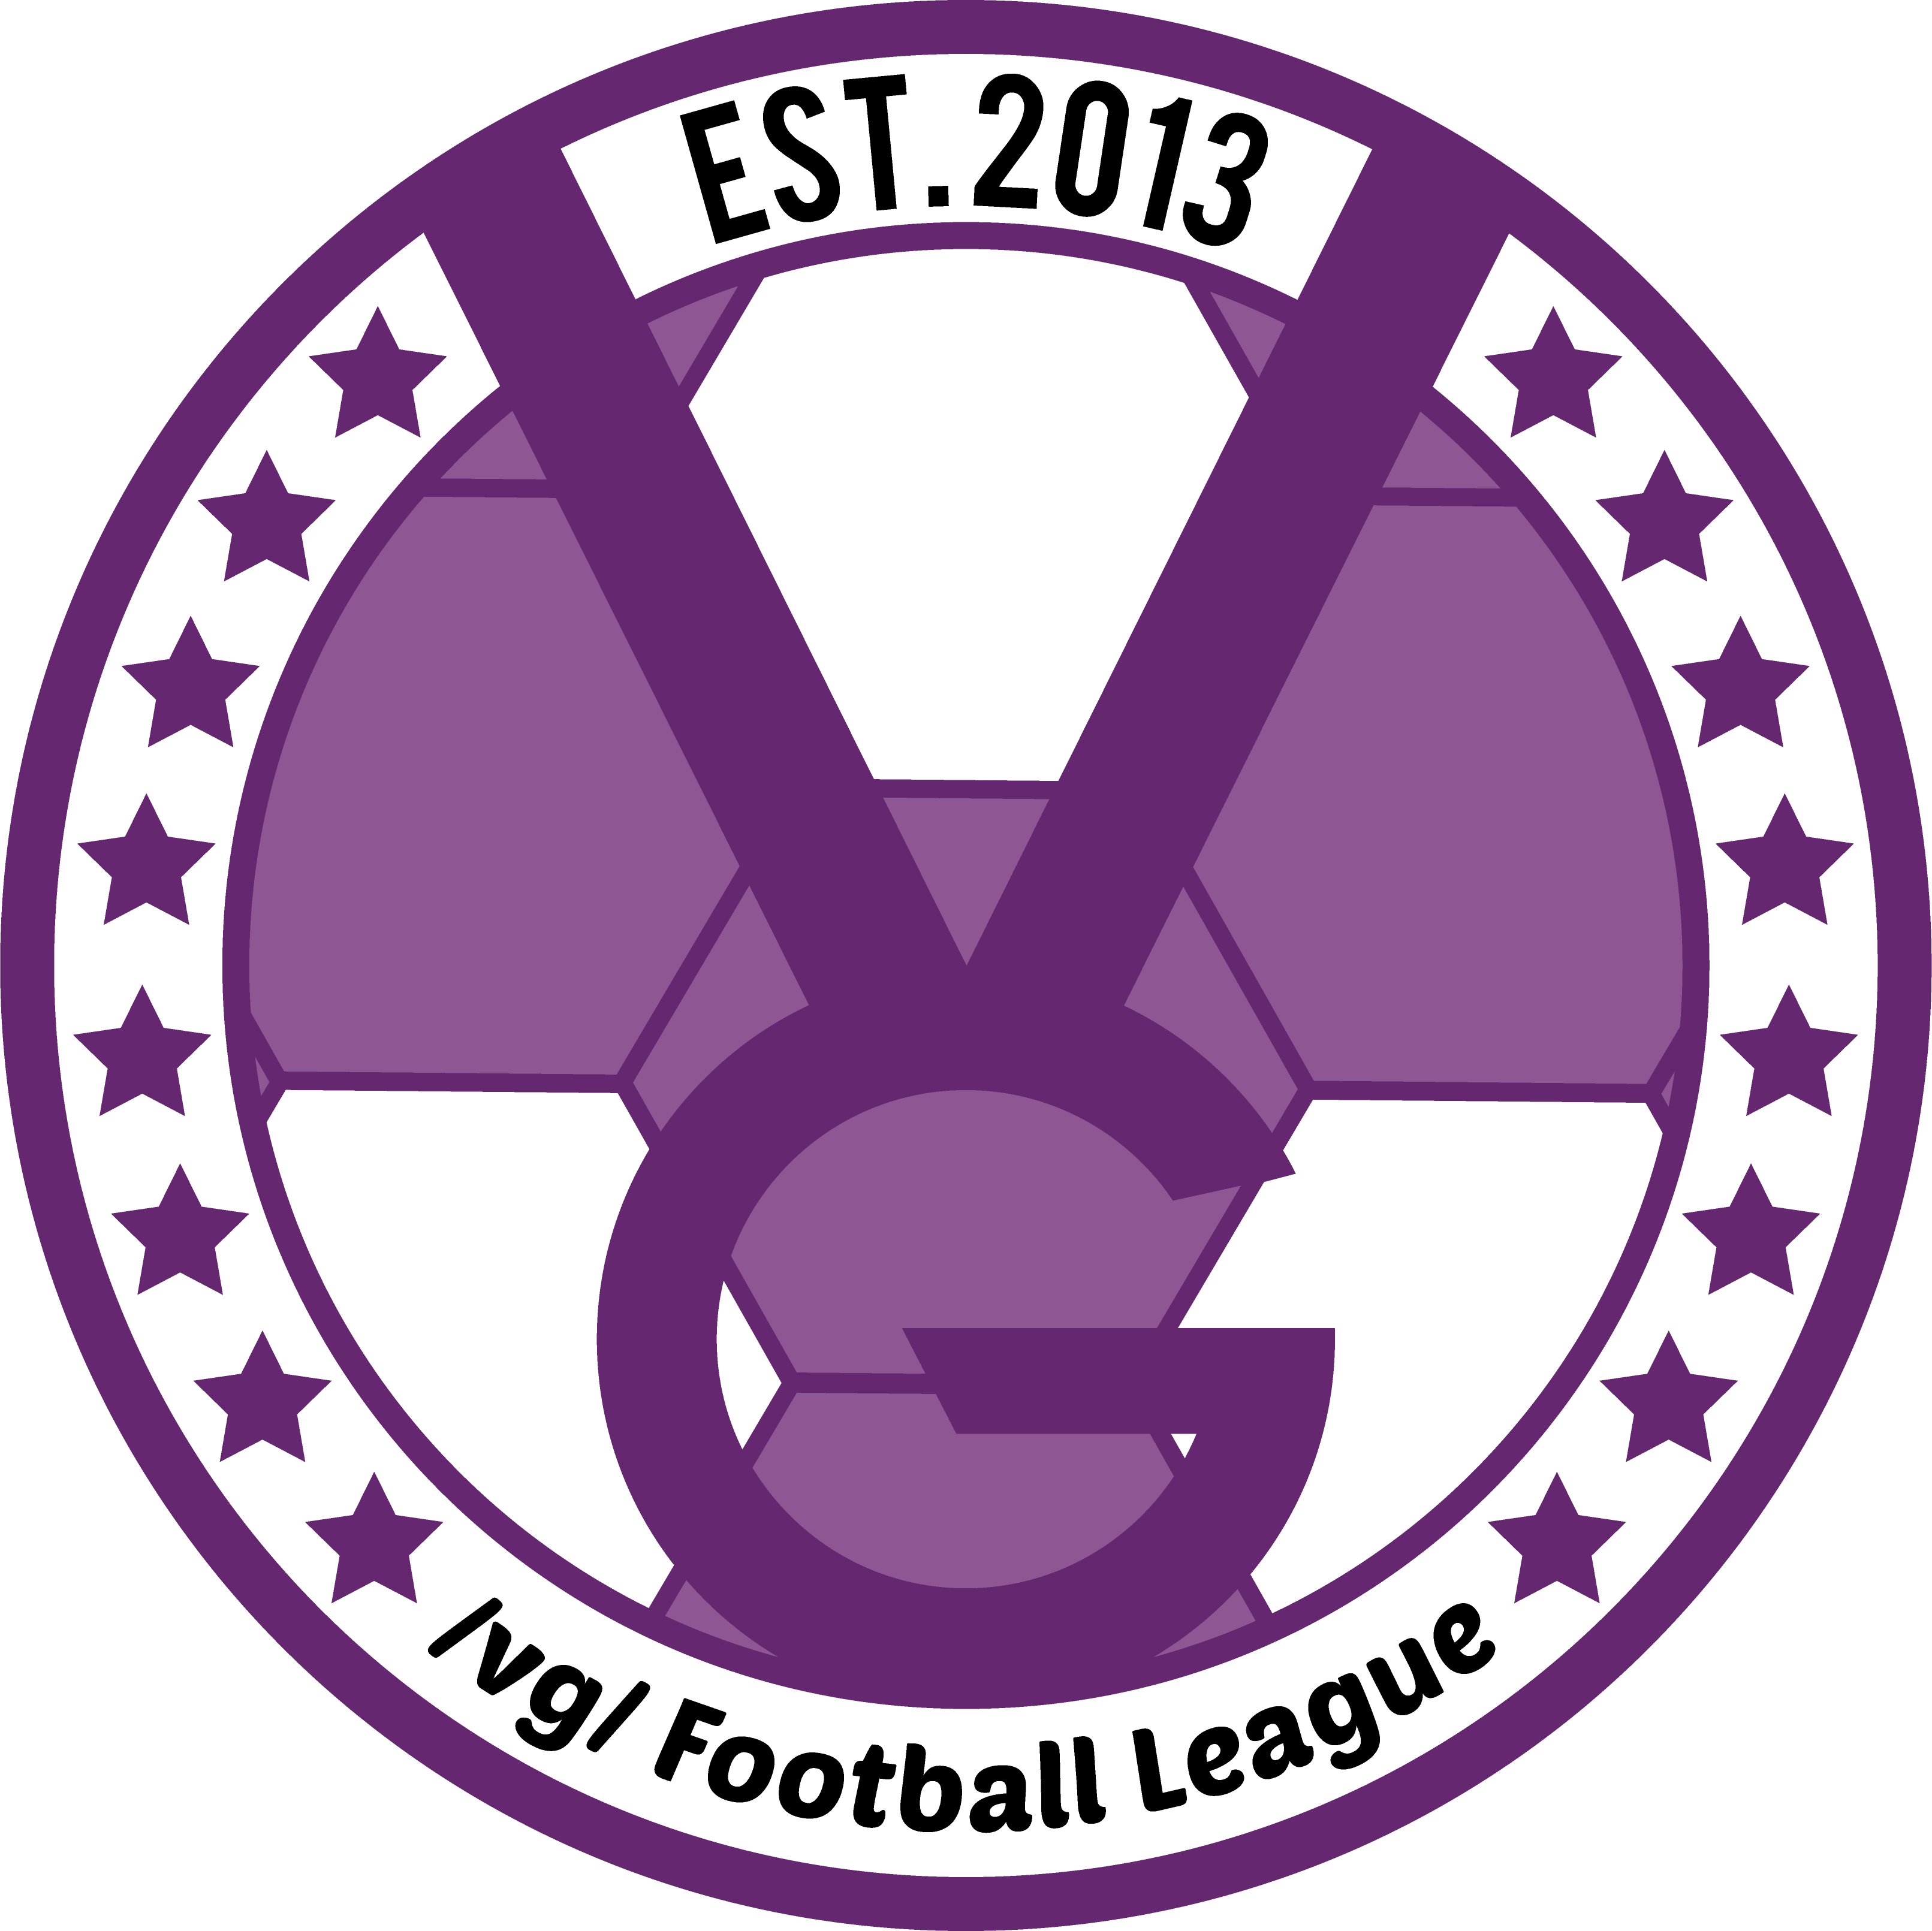 /vg/ League 4